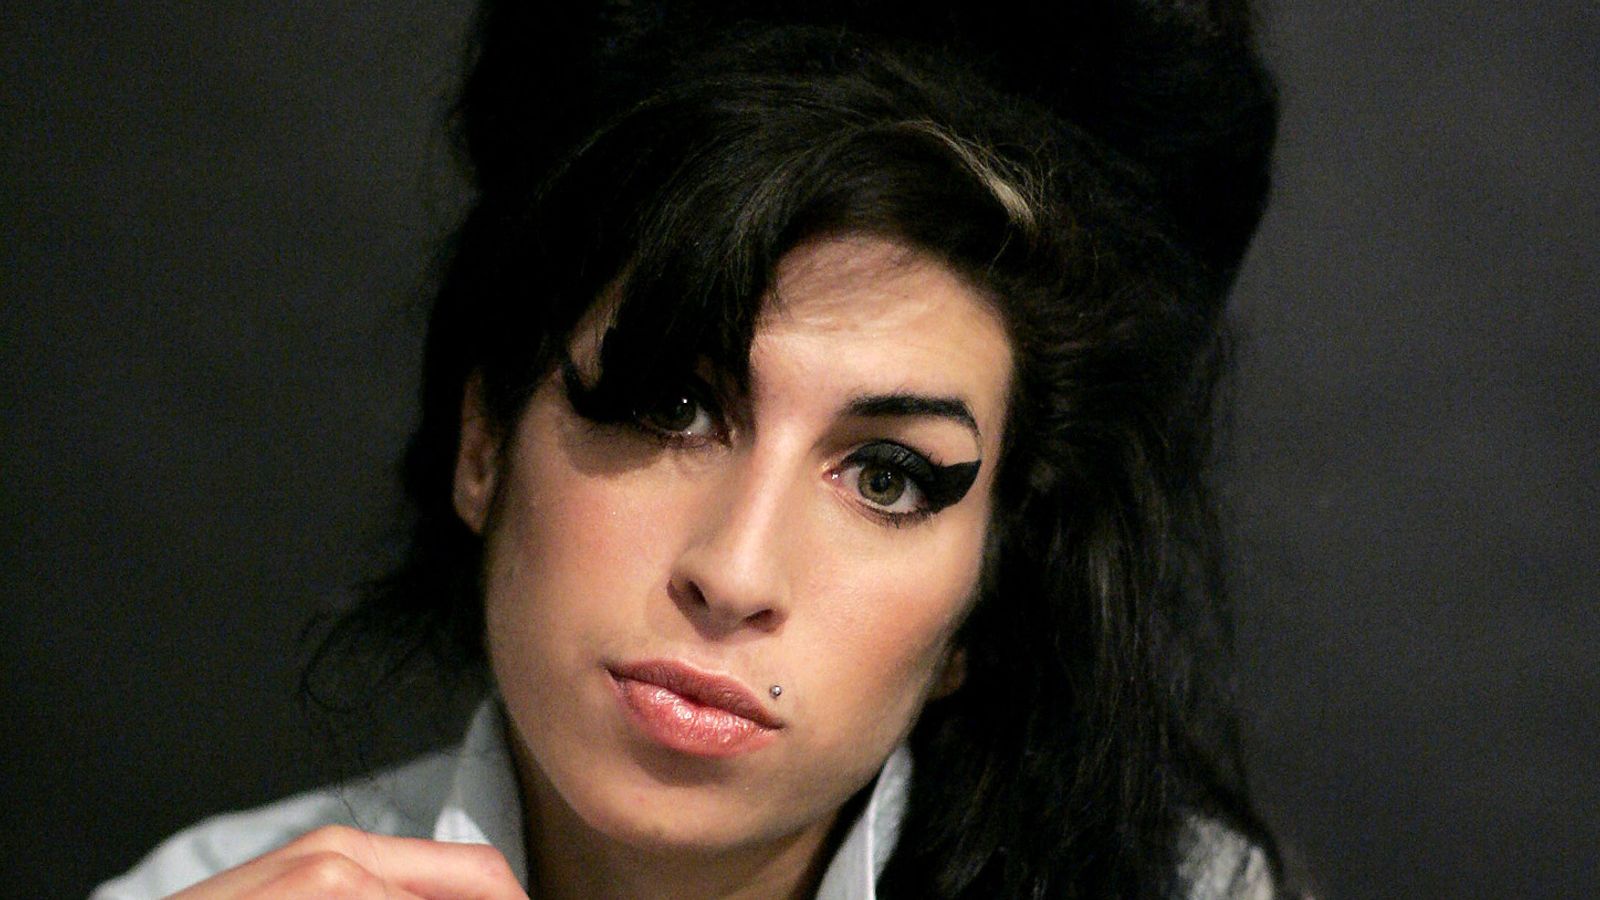 La succession d’Amy Winehouse poursuit les amis de la défunte star pour 730 000 £ pour des articles vendus aux enchères |  Actualités Ents & Arts